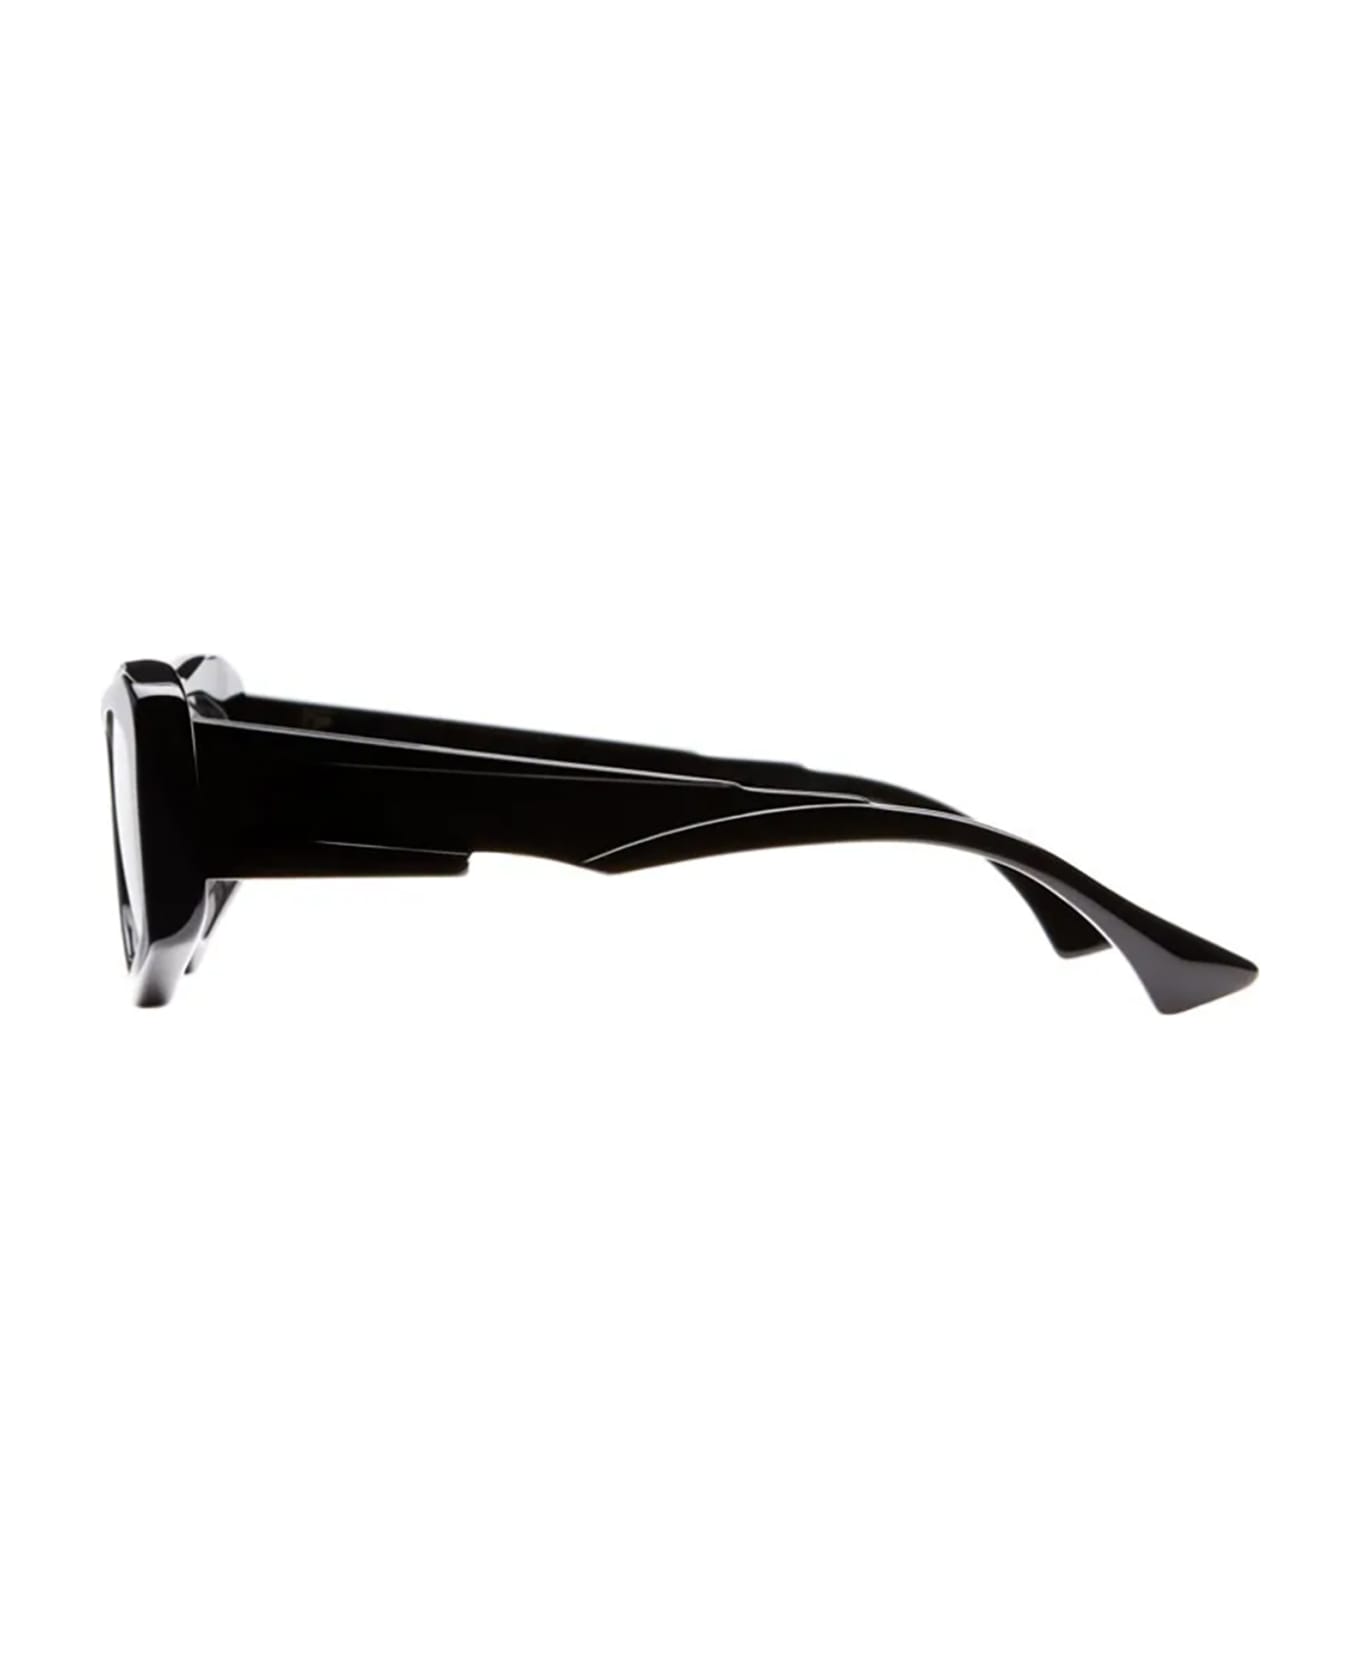 Kuboraum F6 Sunglasses - Bso